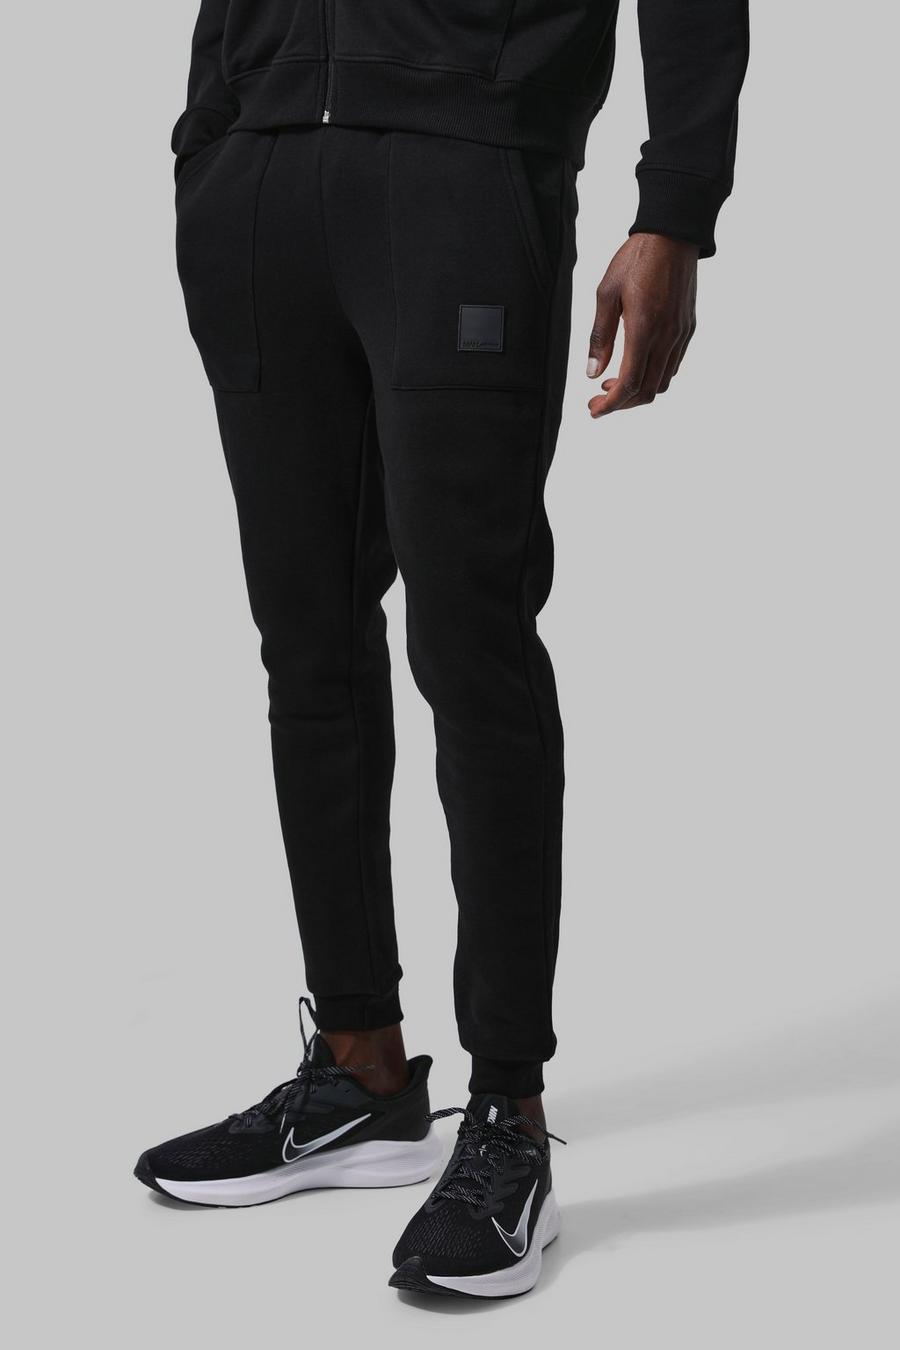 שחור negro מכנסיים ספורטיביים לחדר הכושר עם כיסים וכיתוב Man